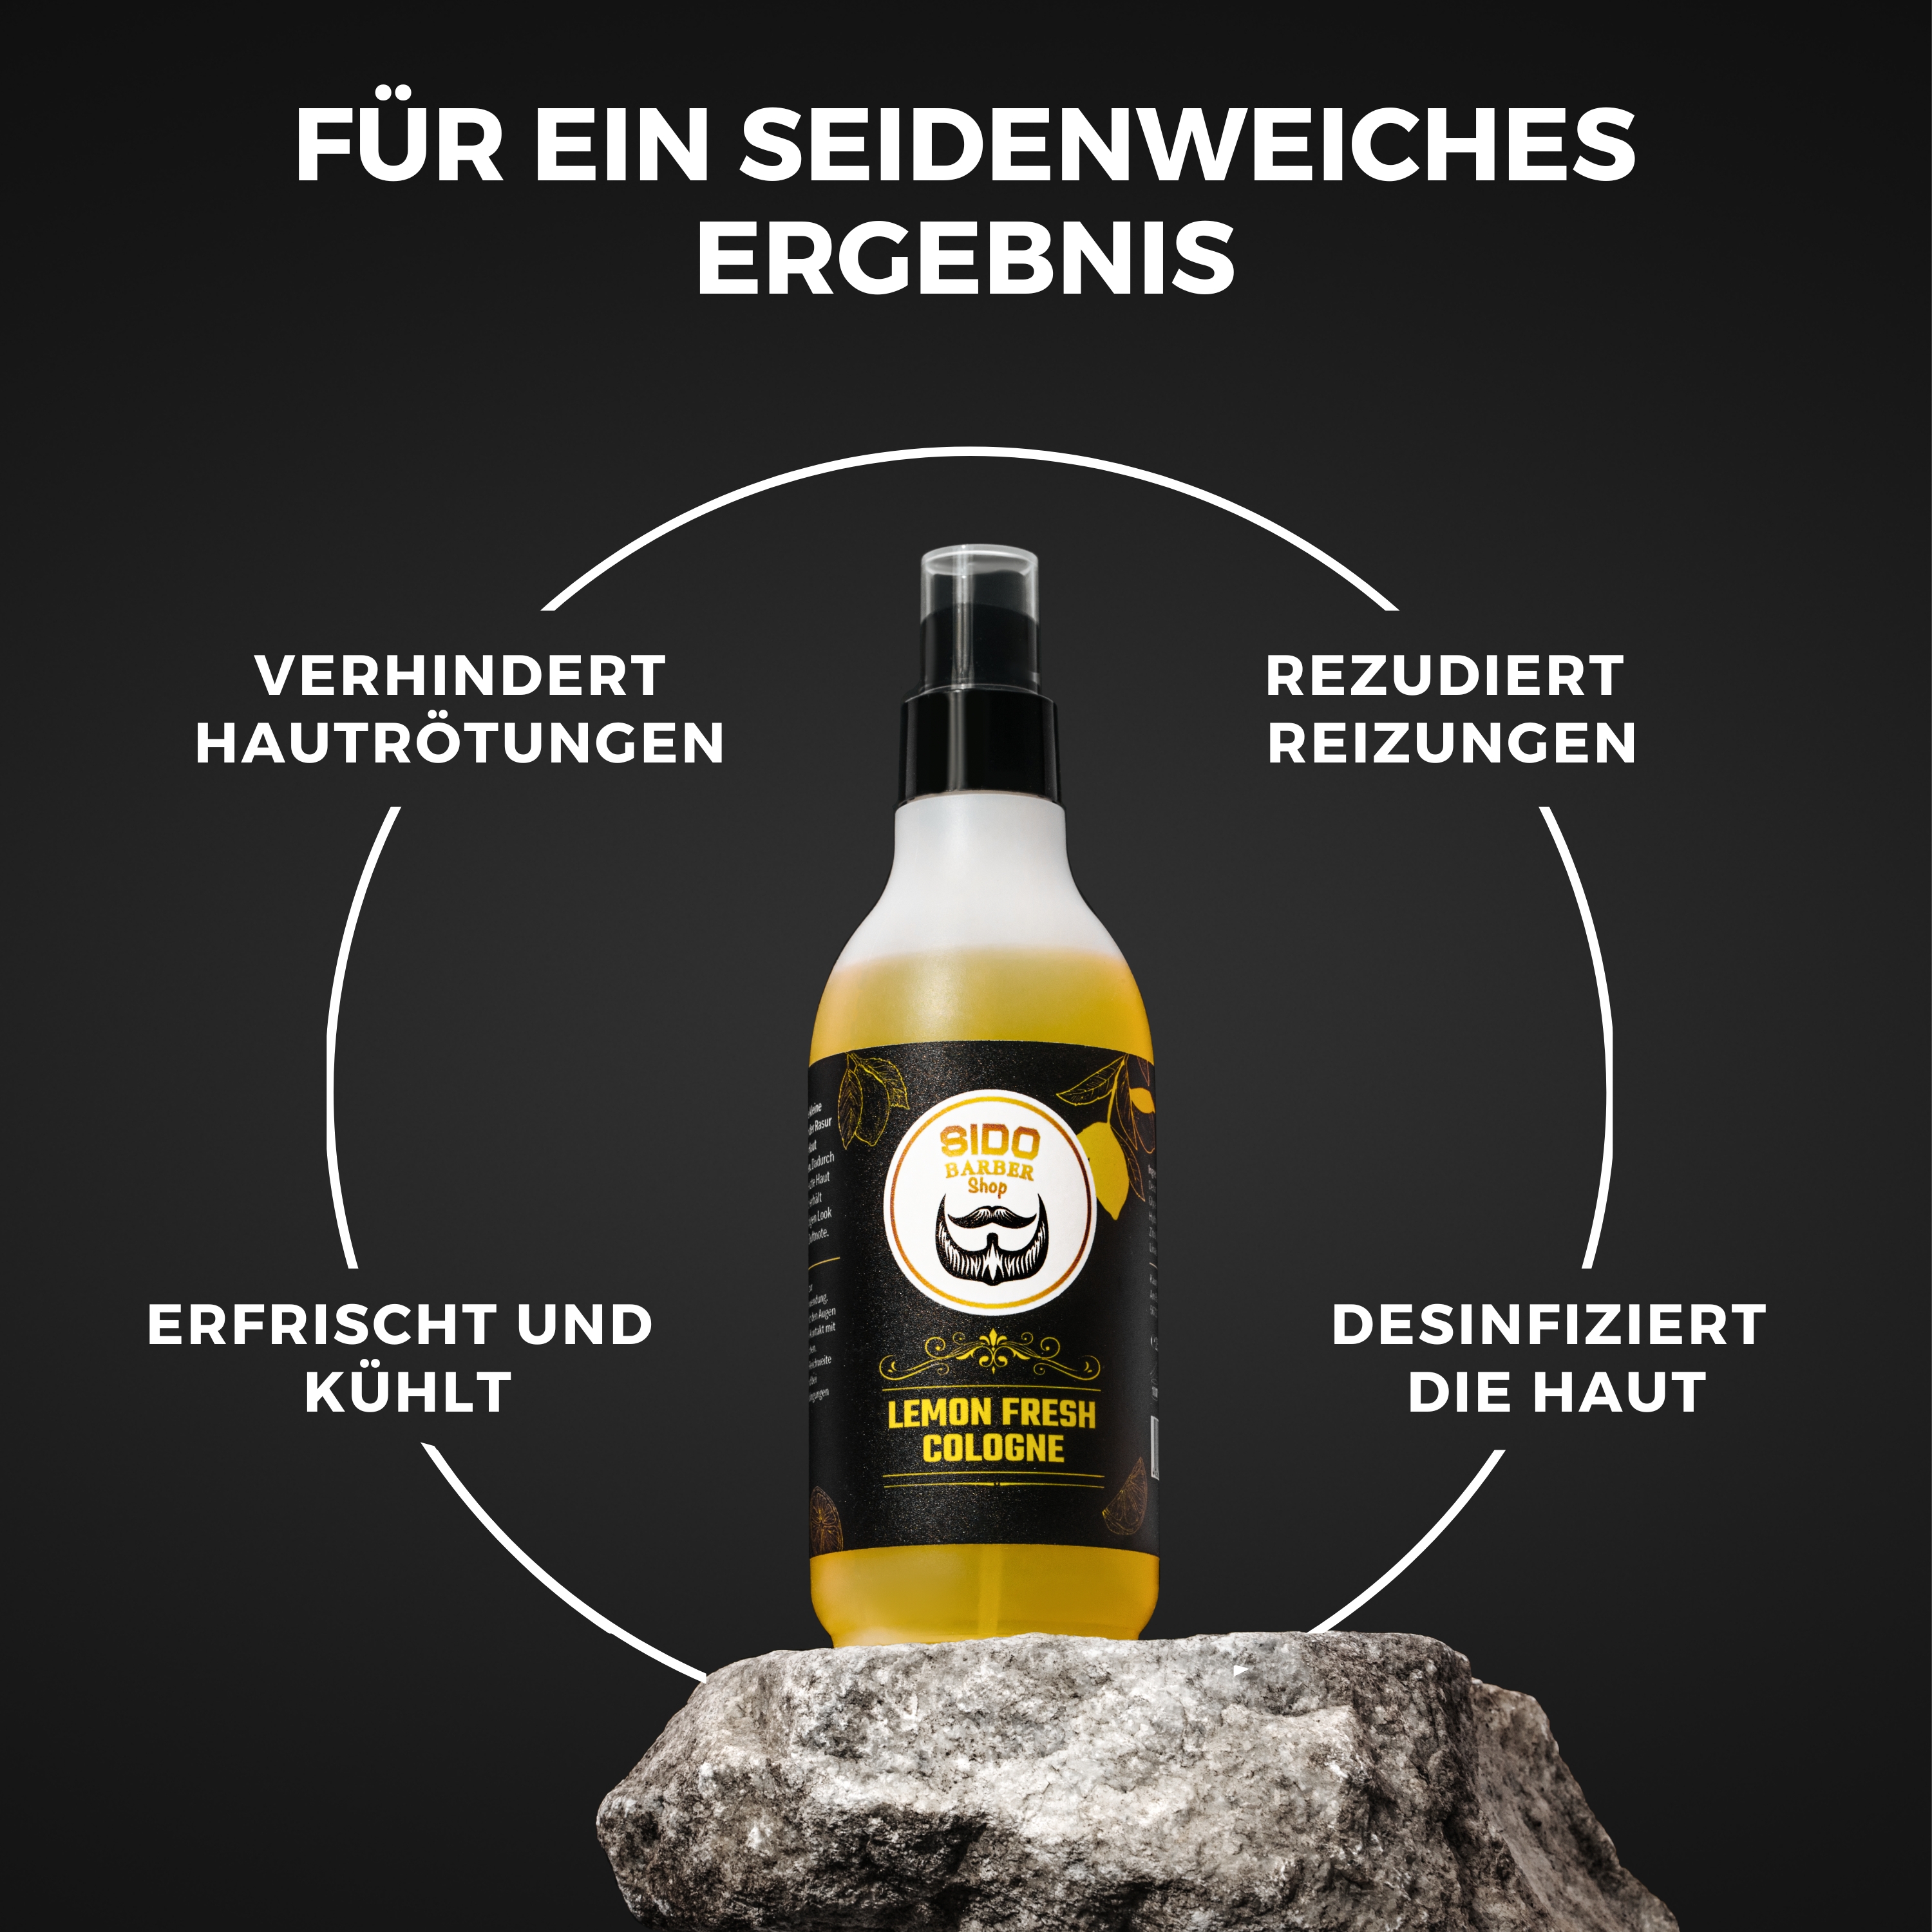 SIDO BARBER Cologne Spray After Shave Herren (250ml, Fresh Lemon) - Barber Spray for Men nach der Rasur - Rasierwasser Spray zur Pflege nach der Rasur - Beruhigt die Haut nach dem Rasieren